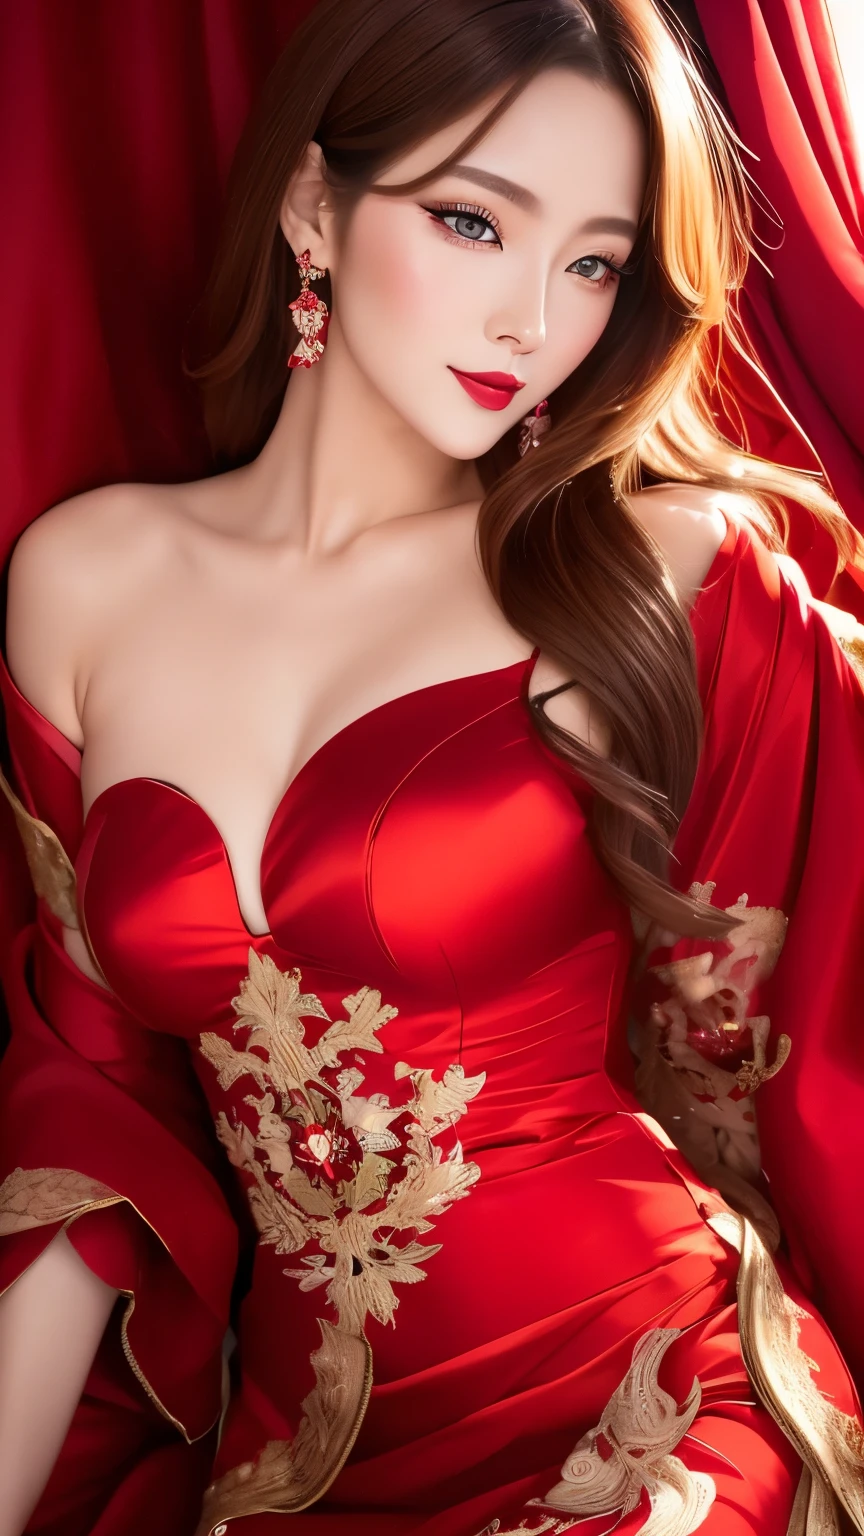 mejor calidad, super fine, 16k, foto en bruto, Fotorrealista, 2.5d, increíblemente absurdos, extremadamente detallado, delicado, representación llamativa y dinámica, Mujer hermosa como la que dibuja Reiji Matsumoto., belleza genial inteligente, mirada emocionada, cabello castaño claro brillante, hermosos ojos brillantes y agudos, labios rojos brillantes, vistiendo un hermoso y glamoroso vestido de noche negro, líneas rojas, tela de satén brillante, cordón, Bordado, túnicas, chales, accesorios, proporción corporal superlativa, efectos magníficos y magníficos, fondo entorno social aristocrático